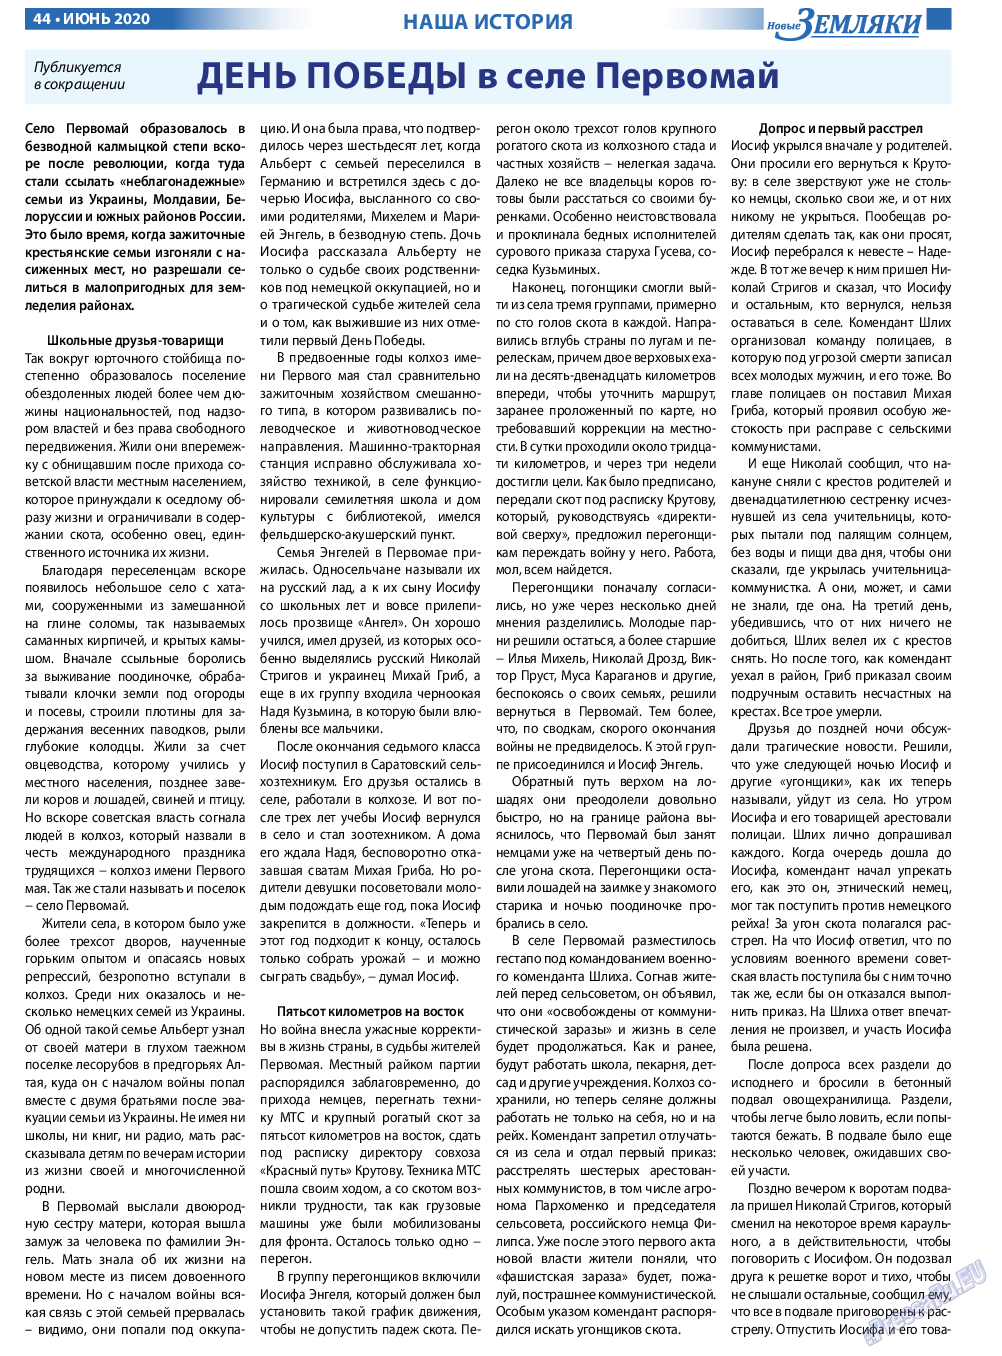 Новые Земляки, газета. 2020 №6 стр.44